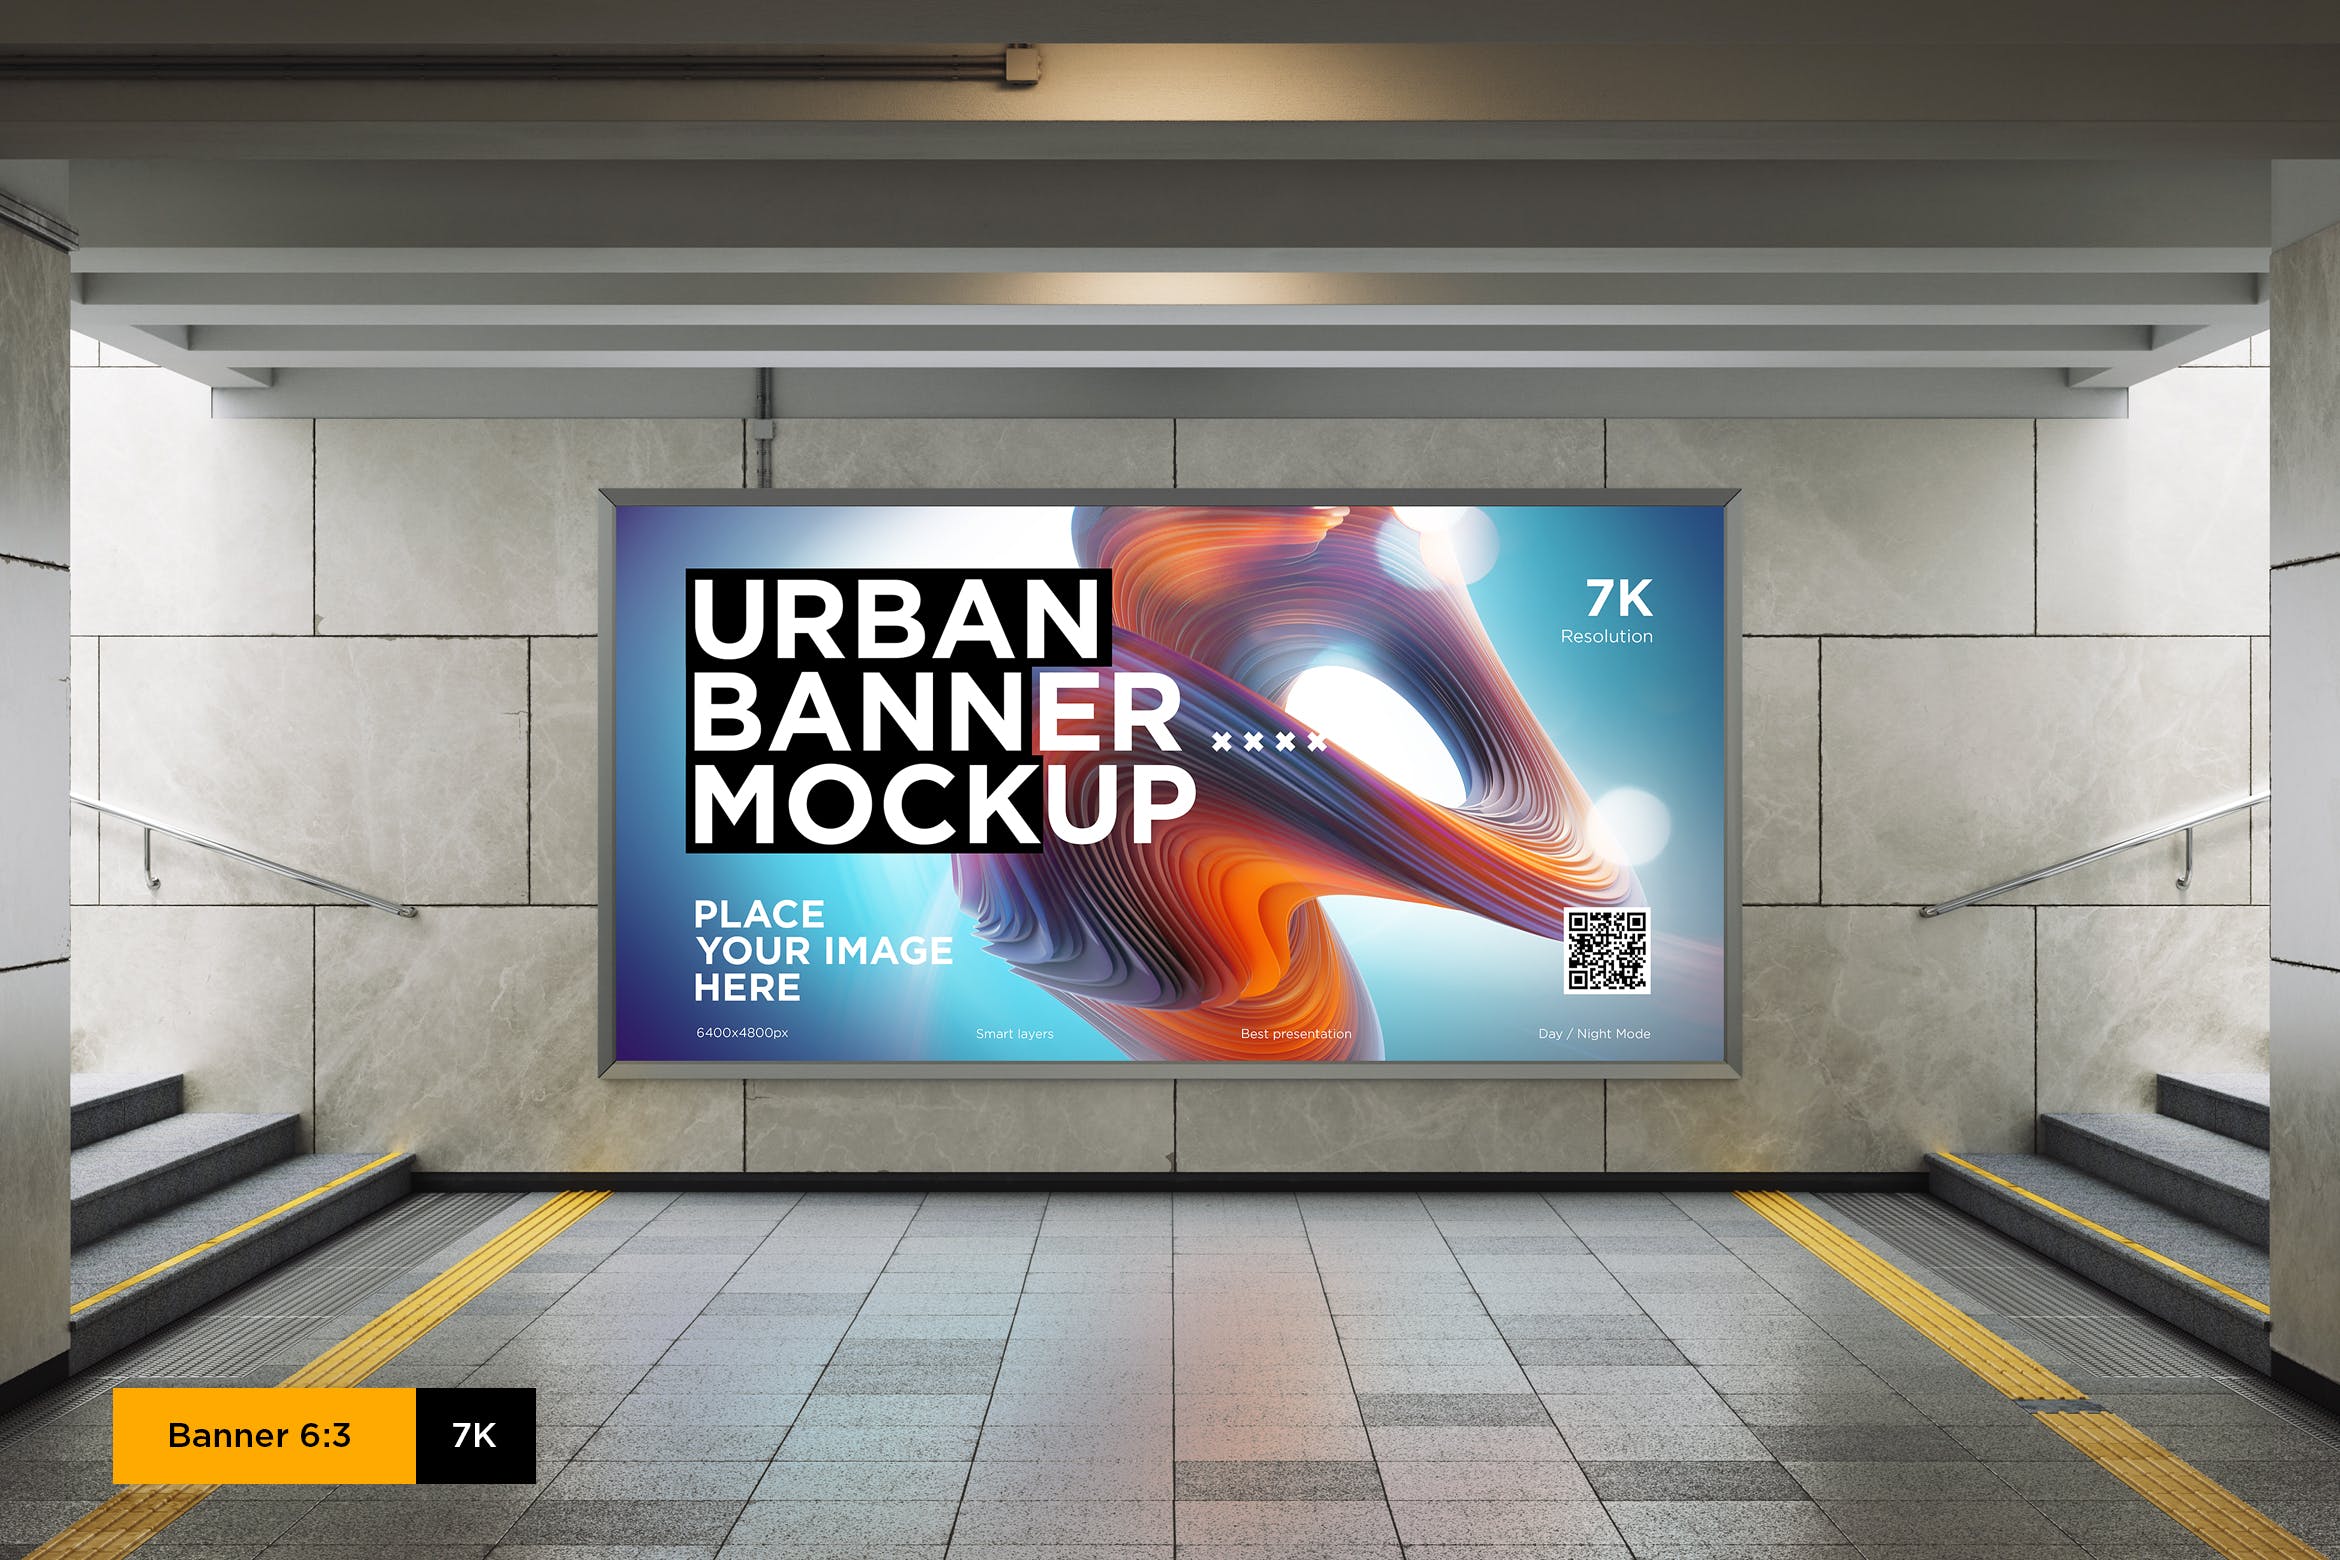 地铁隧道灯箱广告设计预览样机模板 City Lightbox Banner Mockup in Subway插图